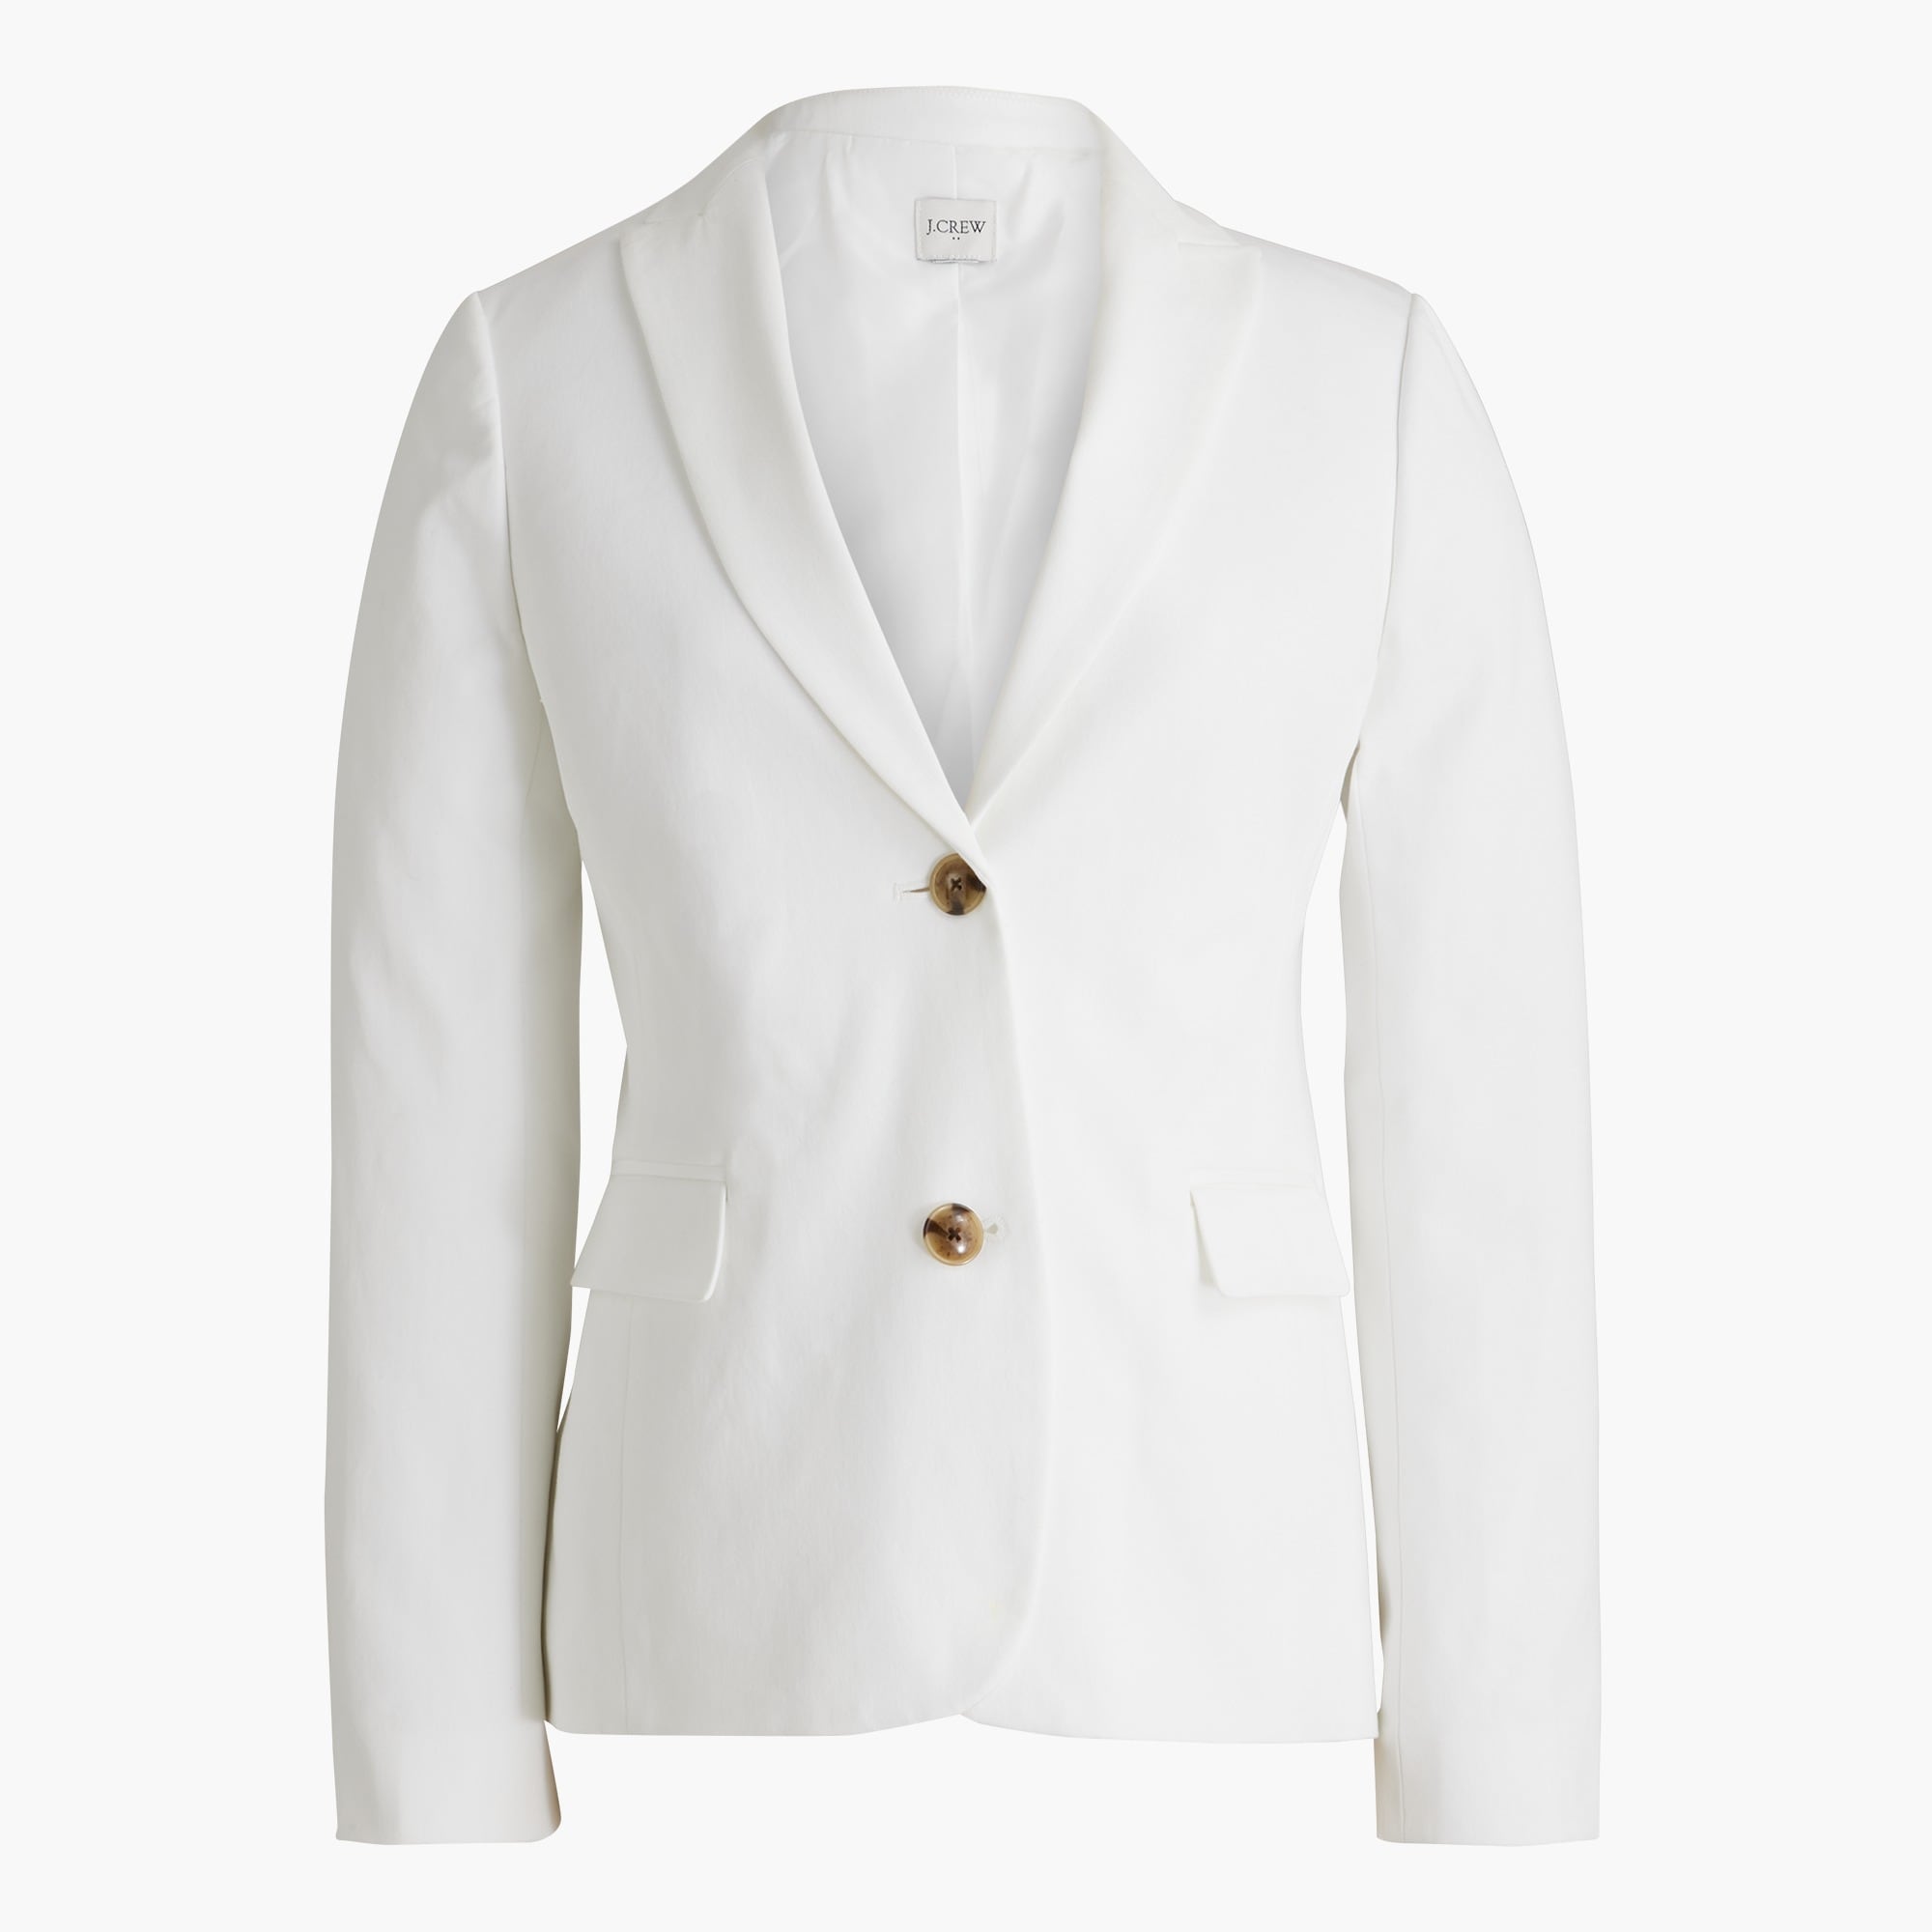  Cotton-blend two-button blazer